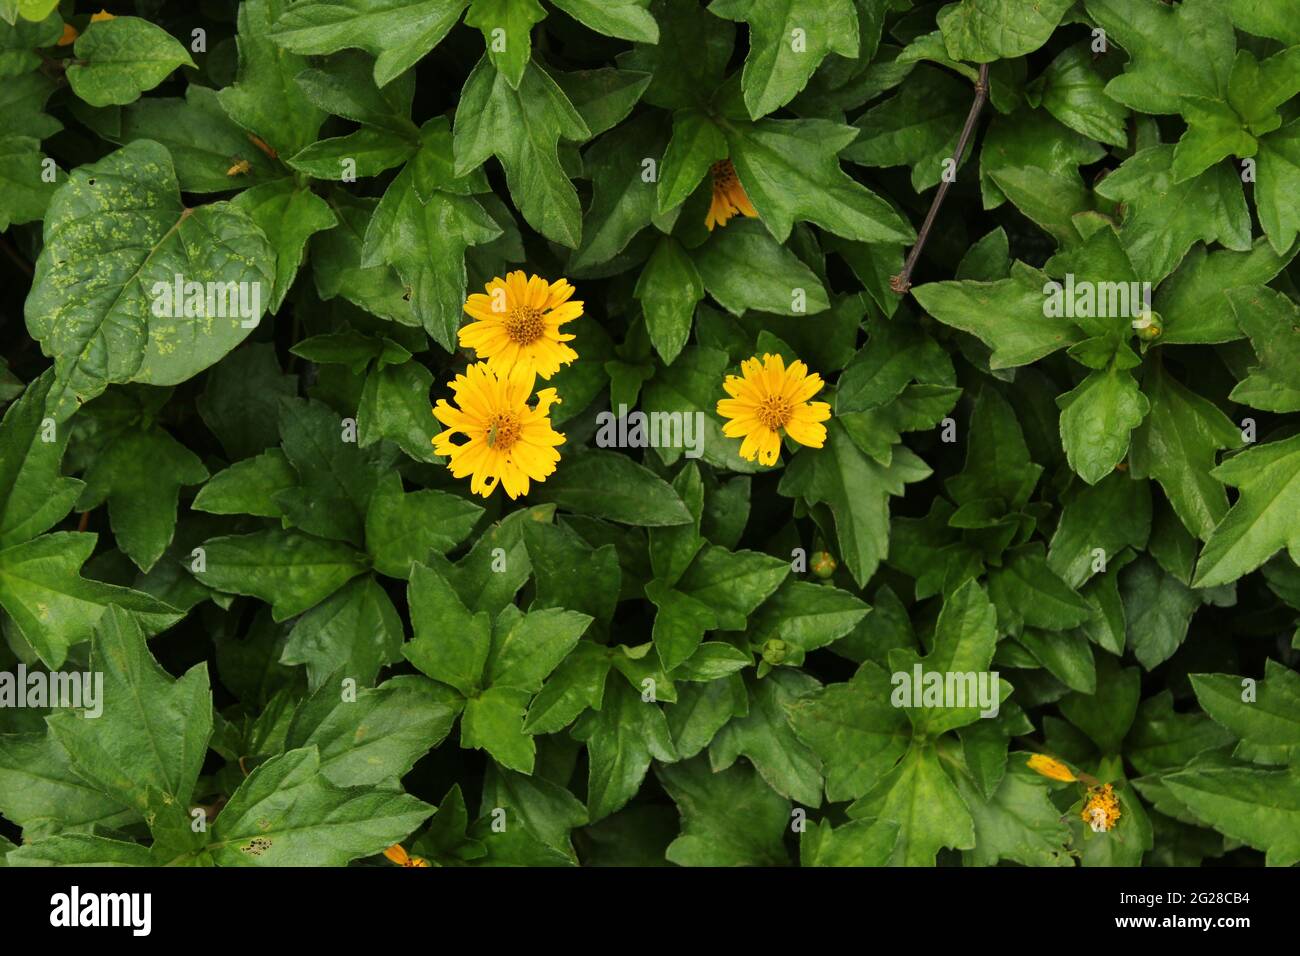 Kleine gelbe Sonnenblume - schleichende Ochsenauge (Compositae) Sphagneticola trilobata (L.) Pruski, Gattung: Sphagneticola -- Wilde Ringelblume, Singapur-Gänseblümchen Stockfoto